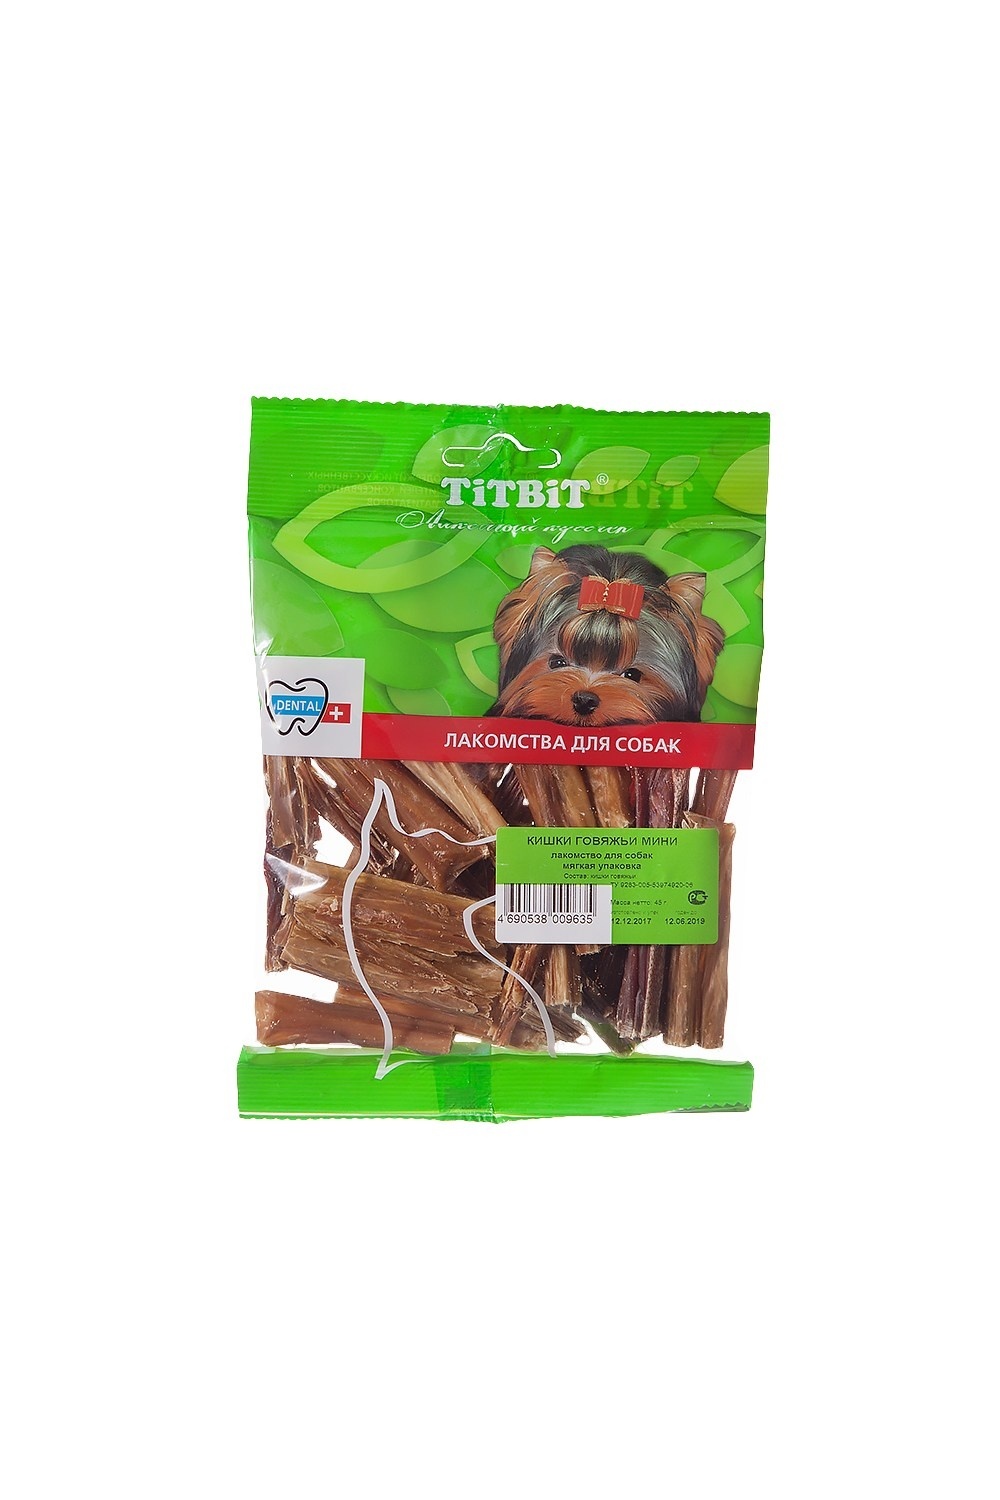 TiTBiT TiTBiT кишки говяжьи мини - мягкая упаковка (45 г) titbit titbit желудок бараний мини мягкая упаковка 40 г